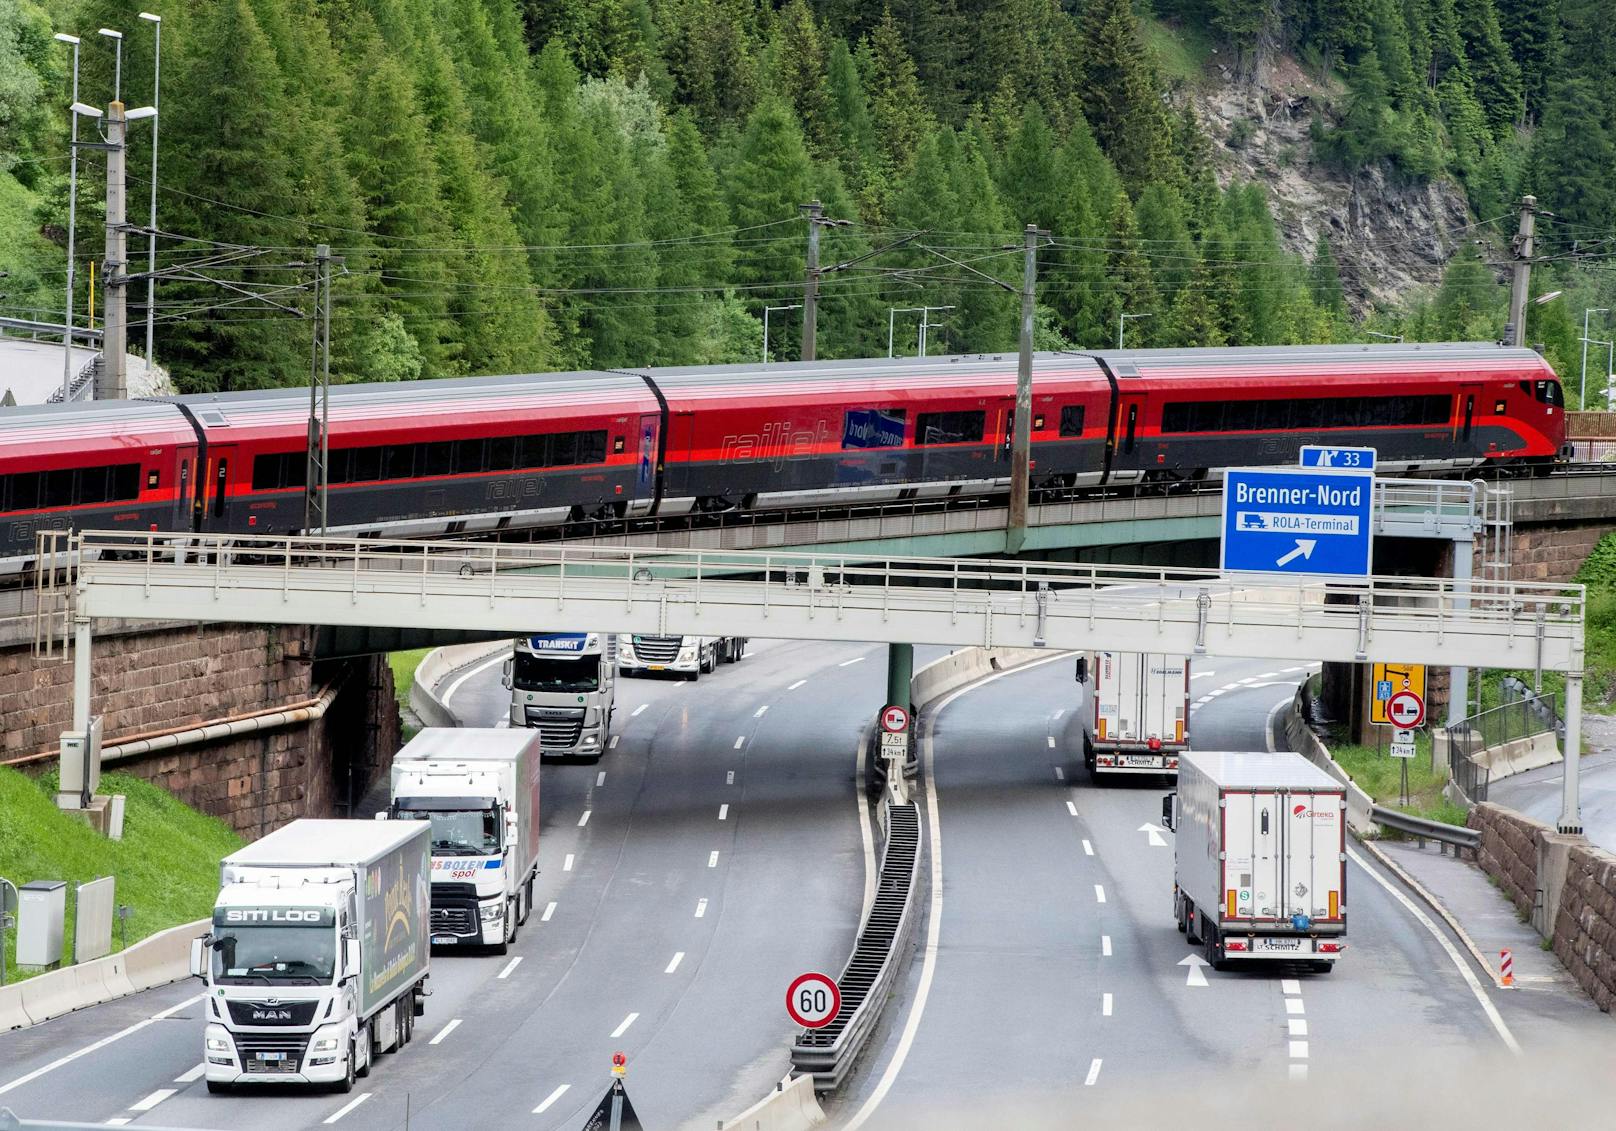 Die heimische Exekutive will künftig verstärkt mit der italienischen Polizei kooperieren.Geplant sind gemeinsame Aktionen auf der Bahnstrecke am Brenner. Archivbild.